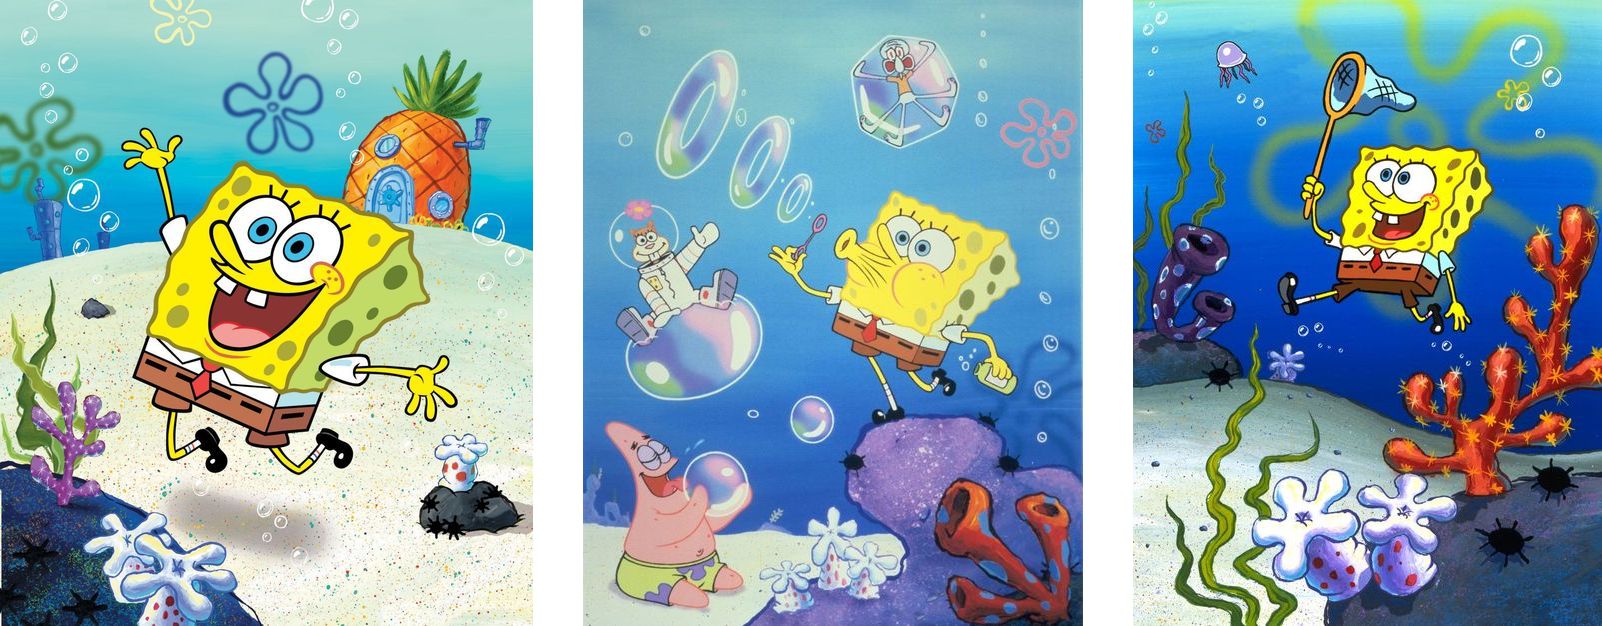 スポンジ ボブの世界を体感できるイベント We Love Spongebob スポンジ ボブ フレンズ バイアコム ネットワークス ジャパン株式会社のプレスリリース